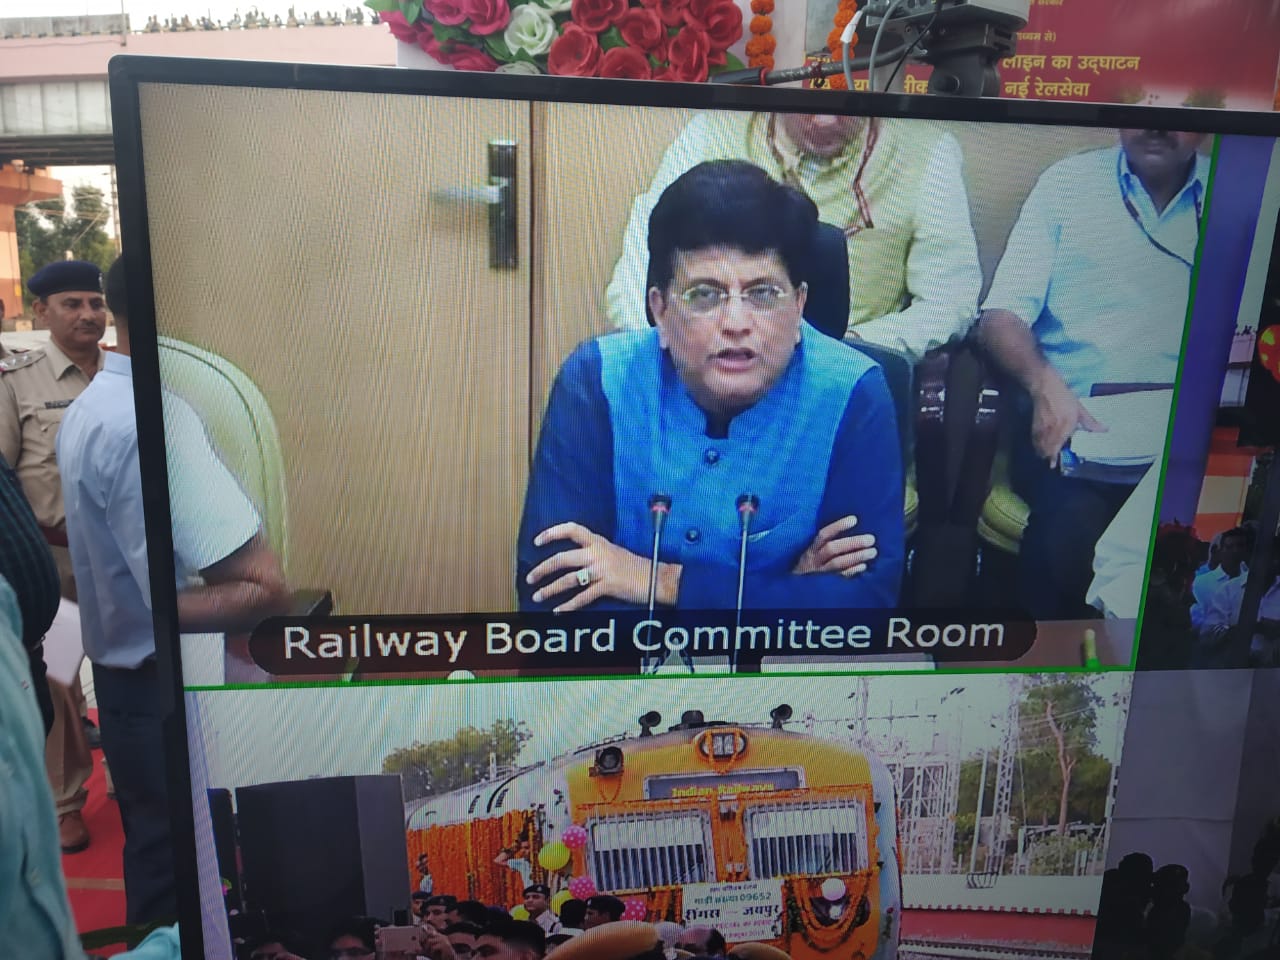 खुशखबर... रेल मंत्री ने रींगस-जयपुर स्पेशल रेल सेवा को दिखाई हरी झंडी